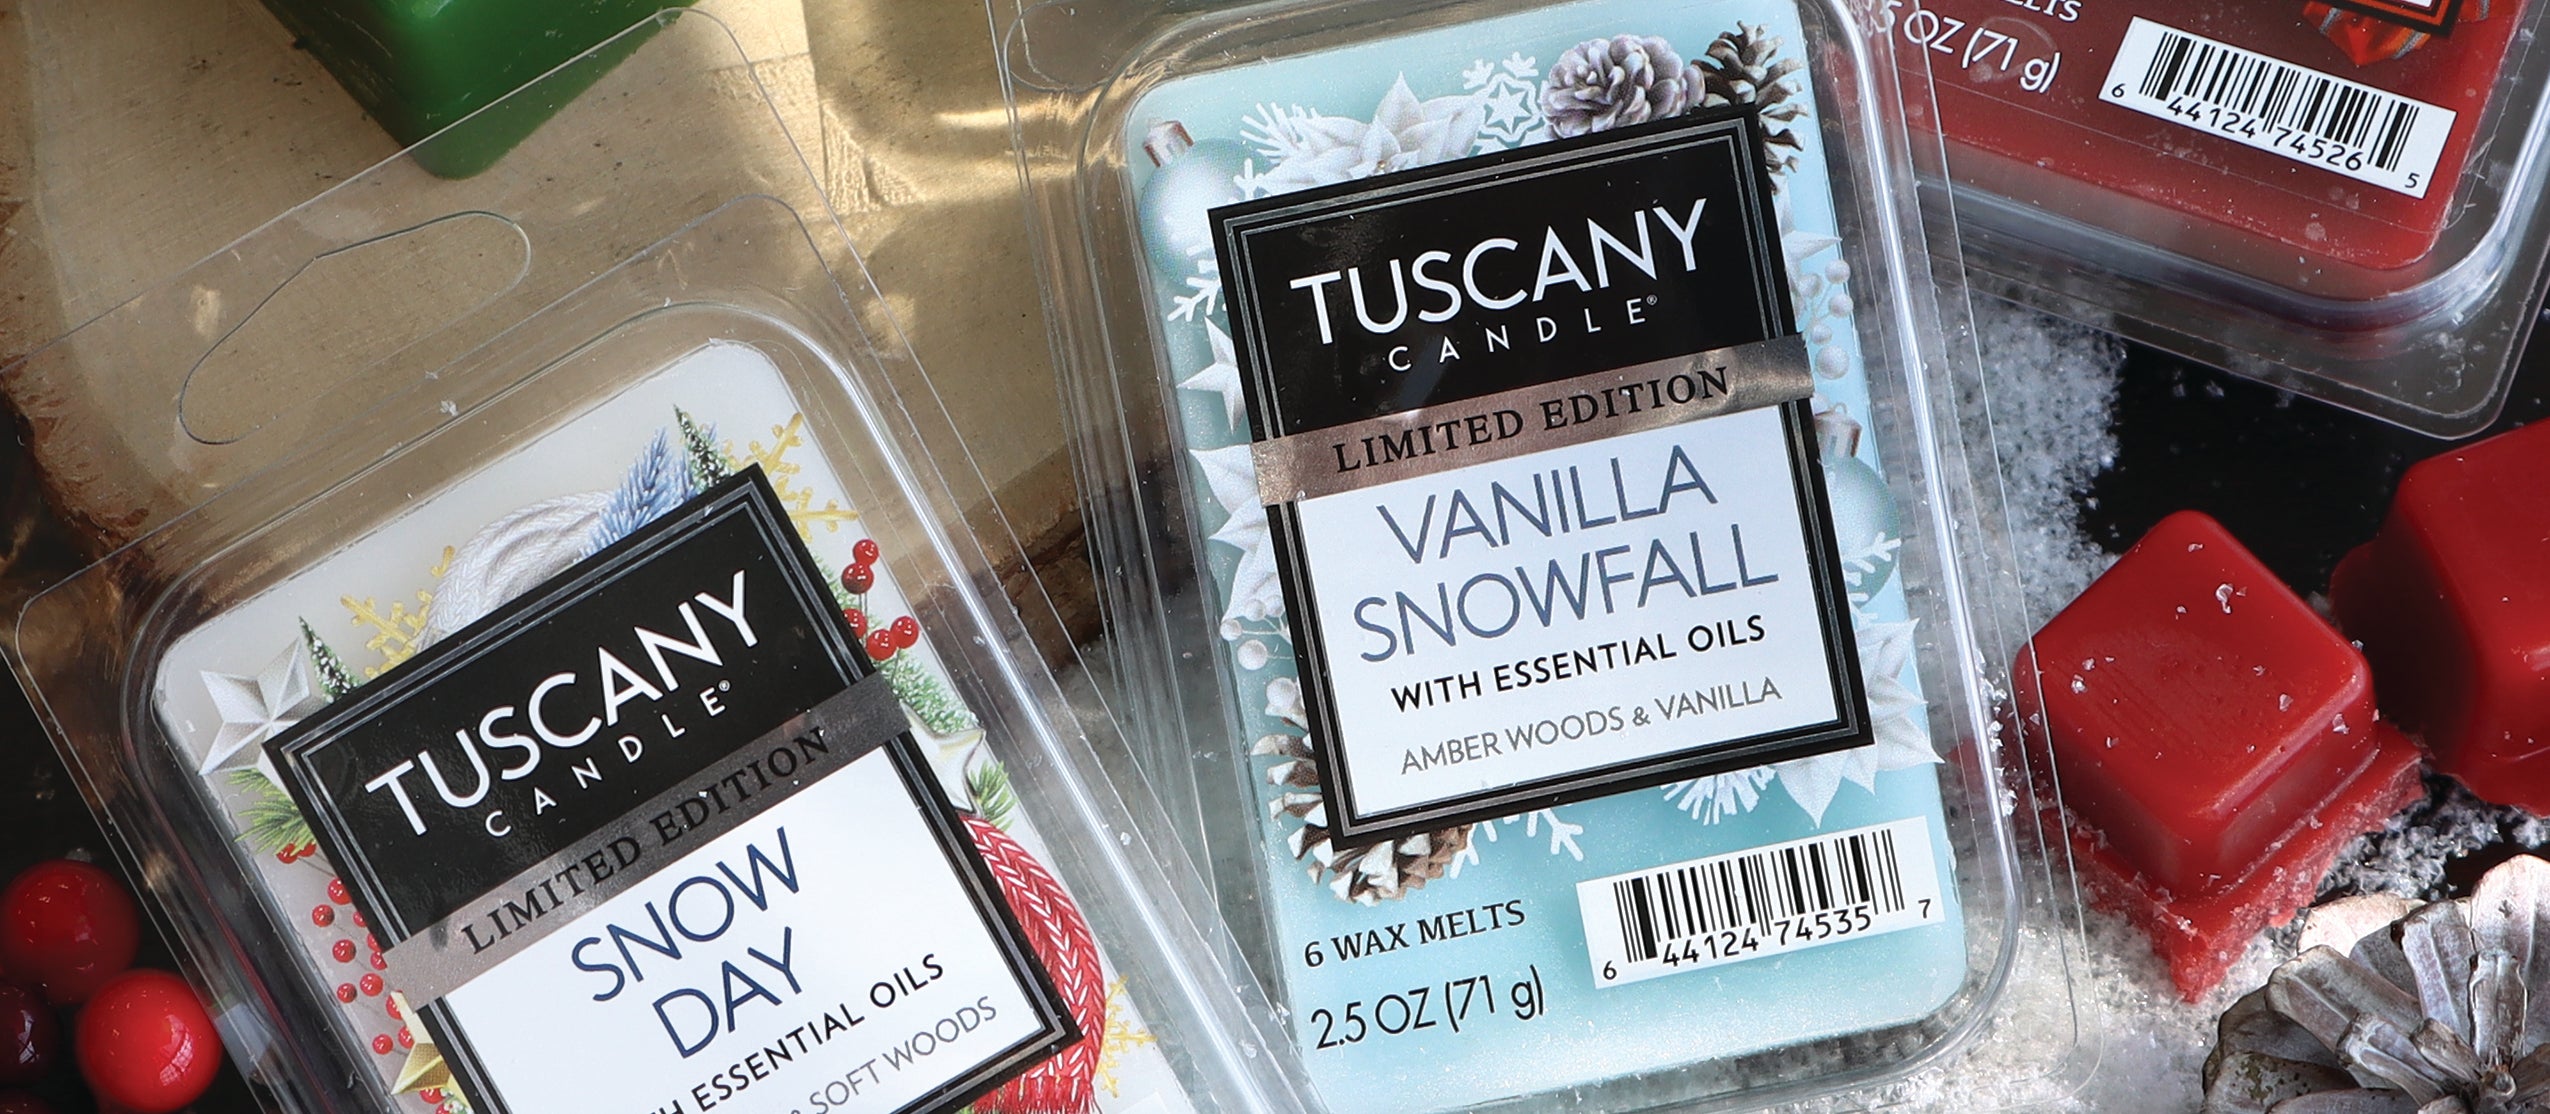 Tuscany wax melts - tuscany wax melts - tuscany wax melts -.